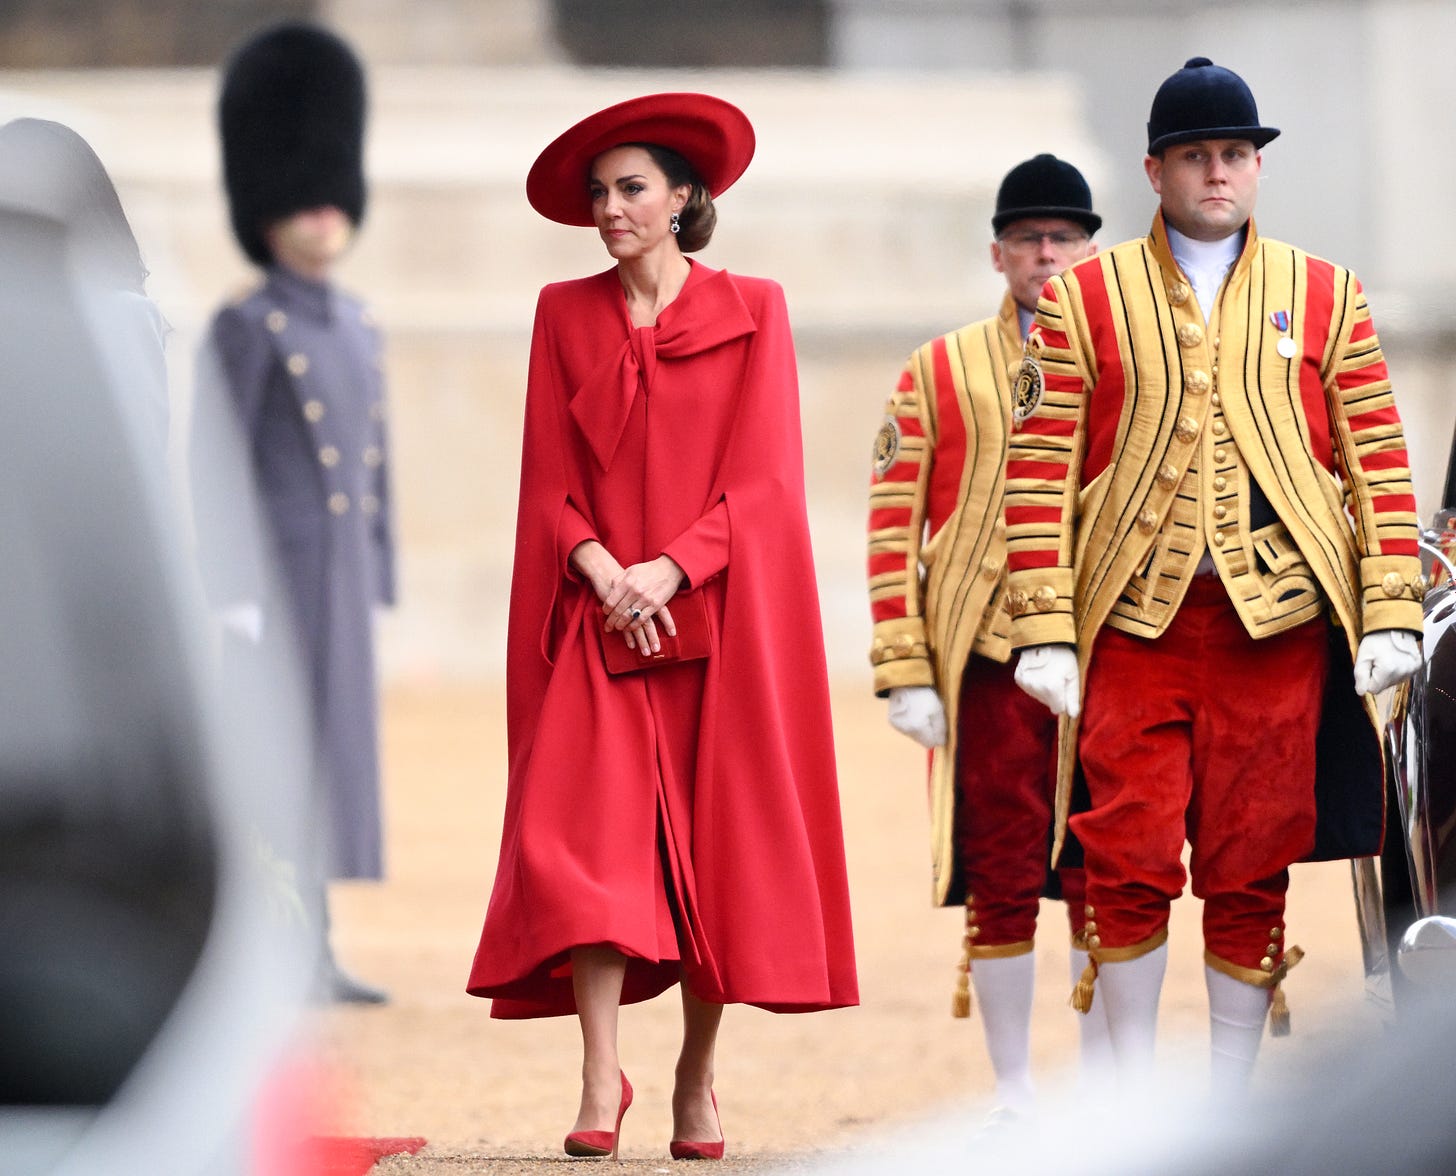 Princess Kate wearing red